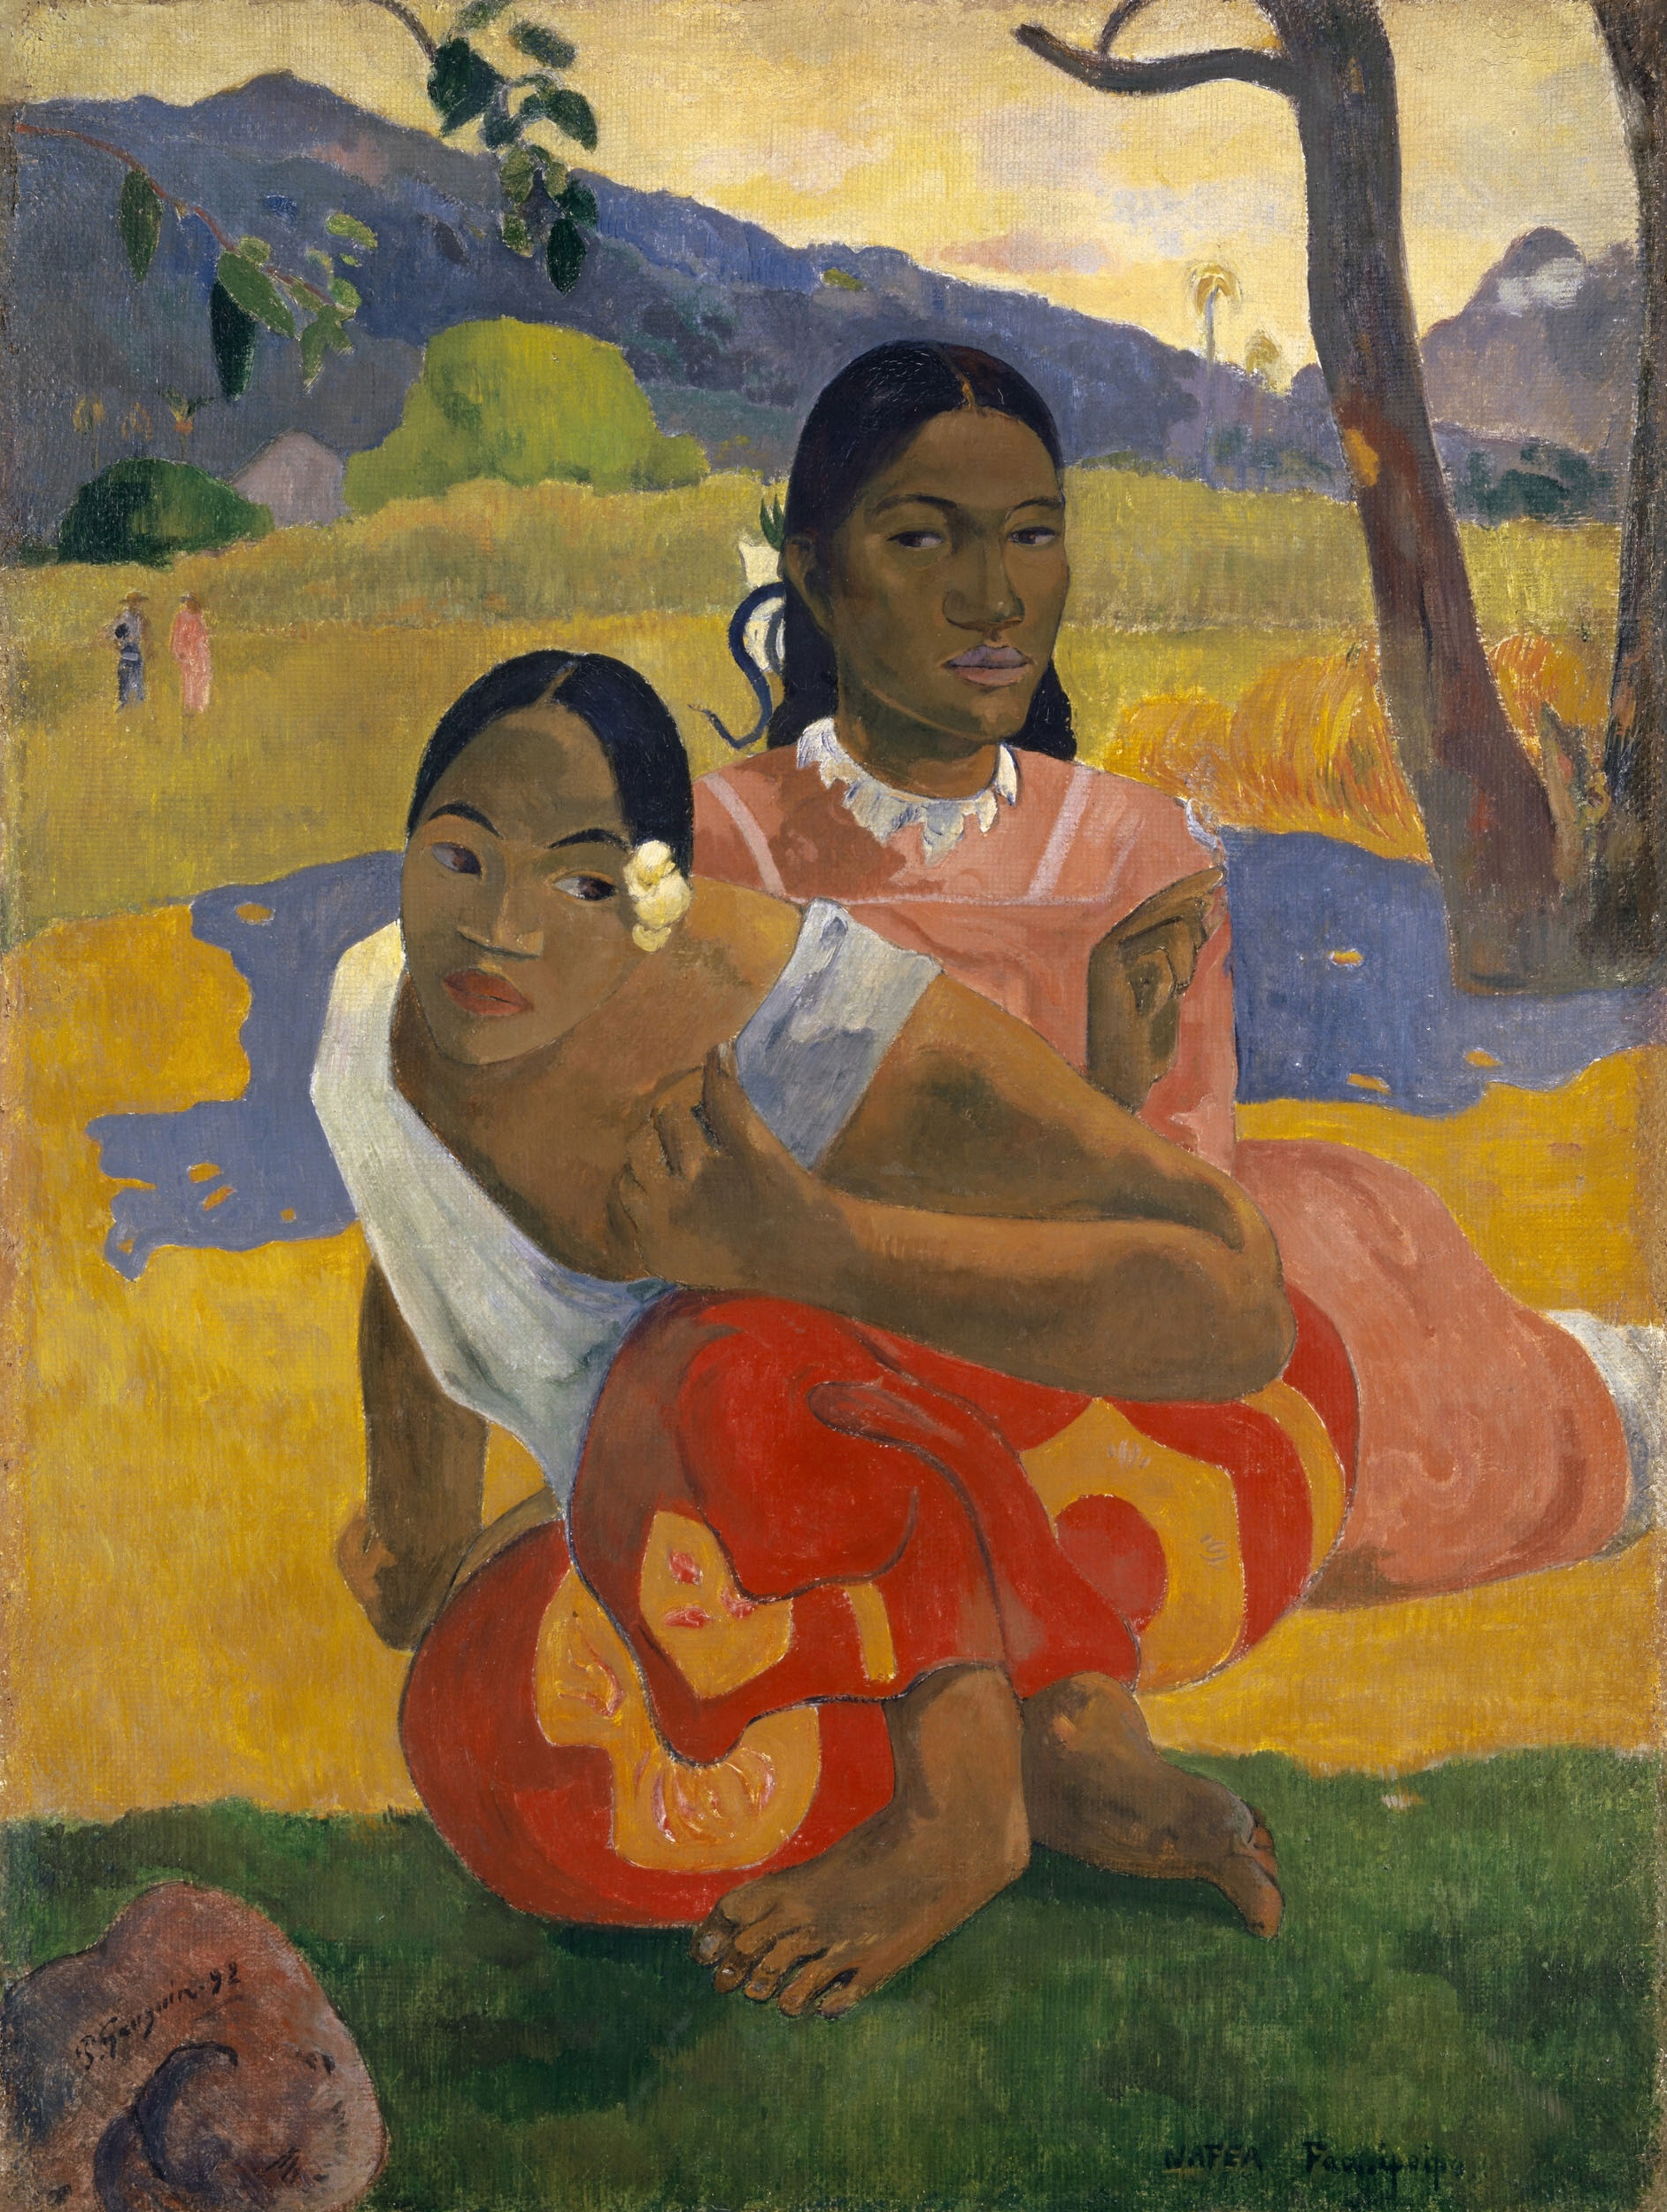 Wanneer ga je trouwen by Paul Gauguin - 1892 - 101 x 77 cm 